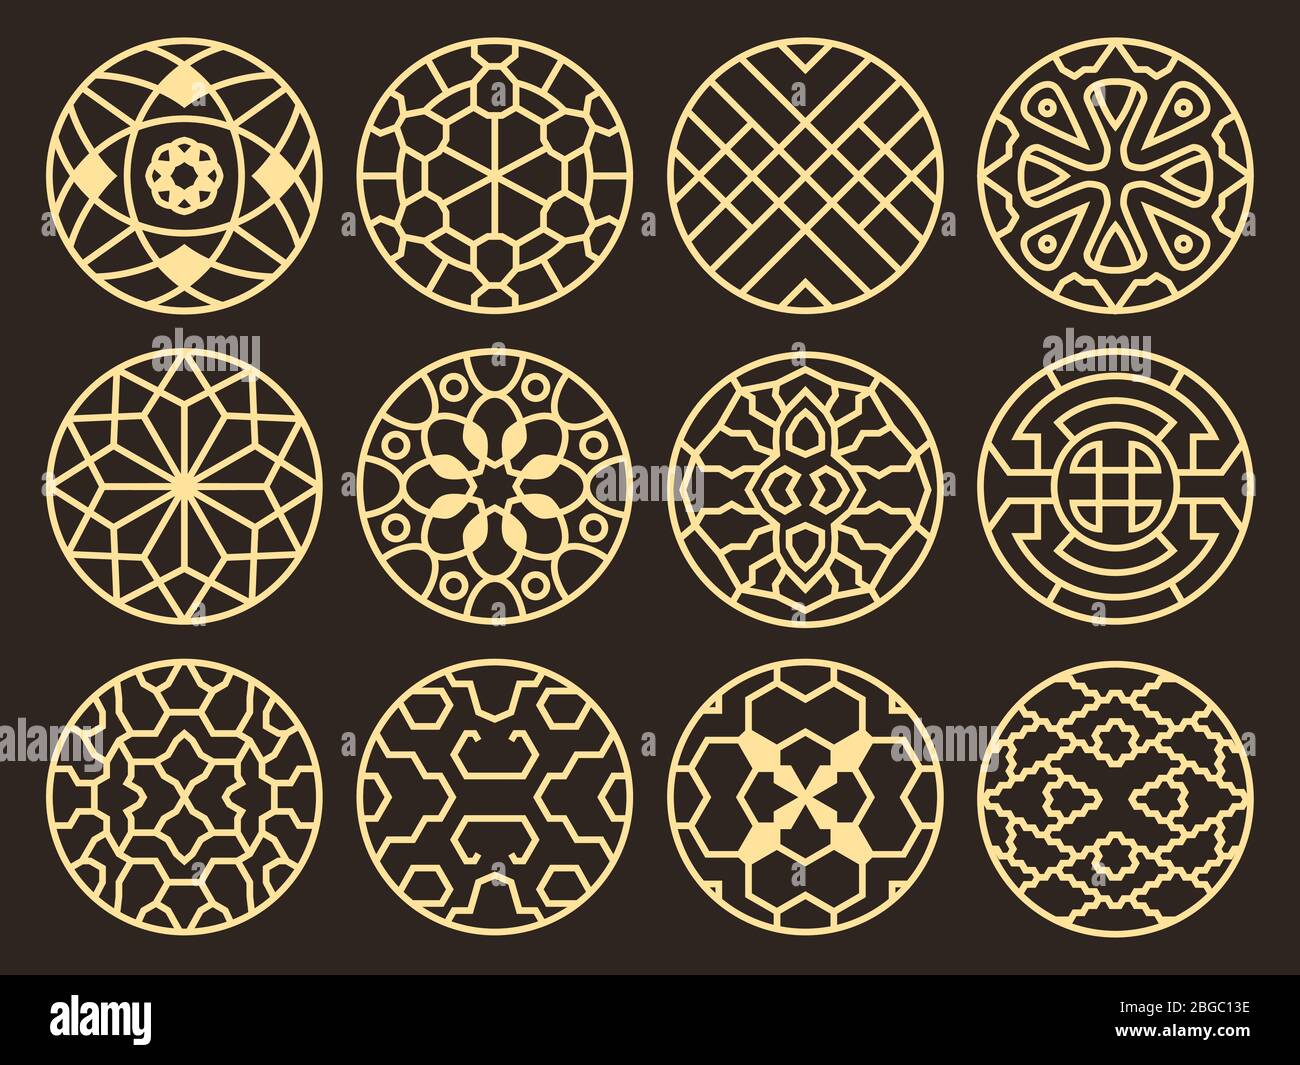 Koreanische und chinesische traditionelle Vektor alten buddhistischen Muster, Ornamente und Symbole. Asiatische runde Element Muster Tattoo, Illustration von symbolischen Rahmen Stock Vektor